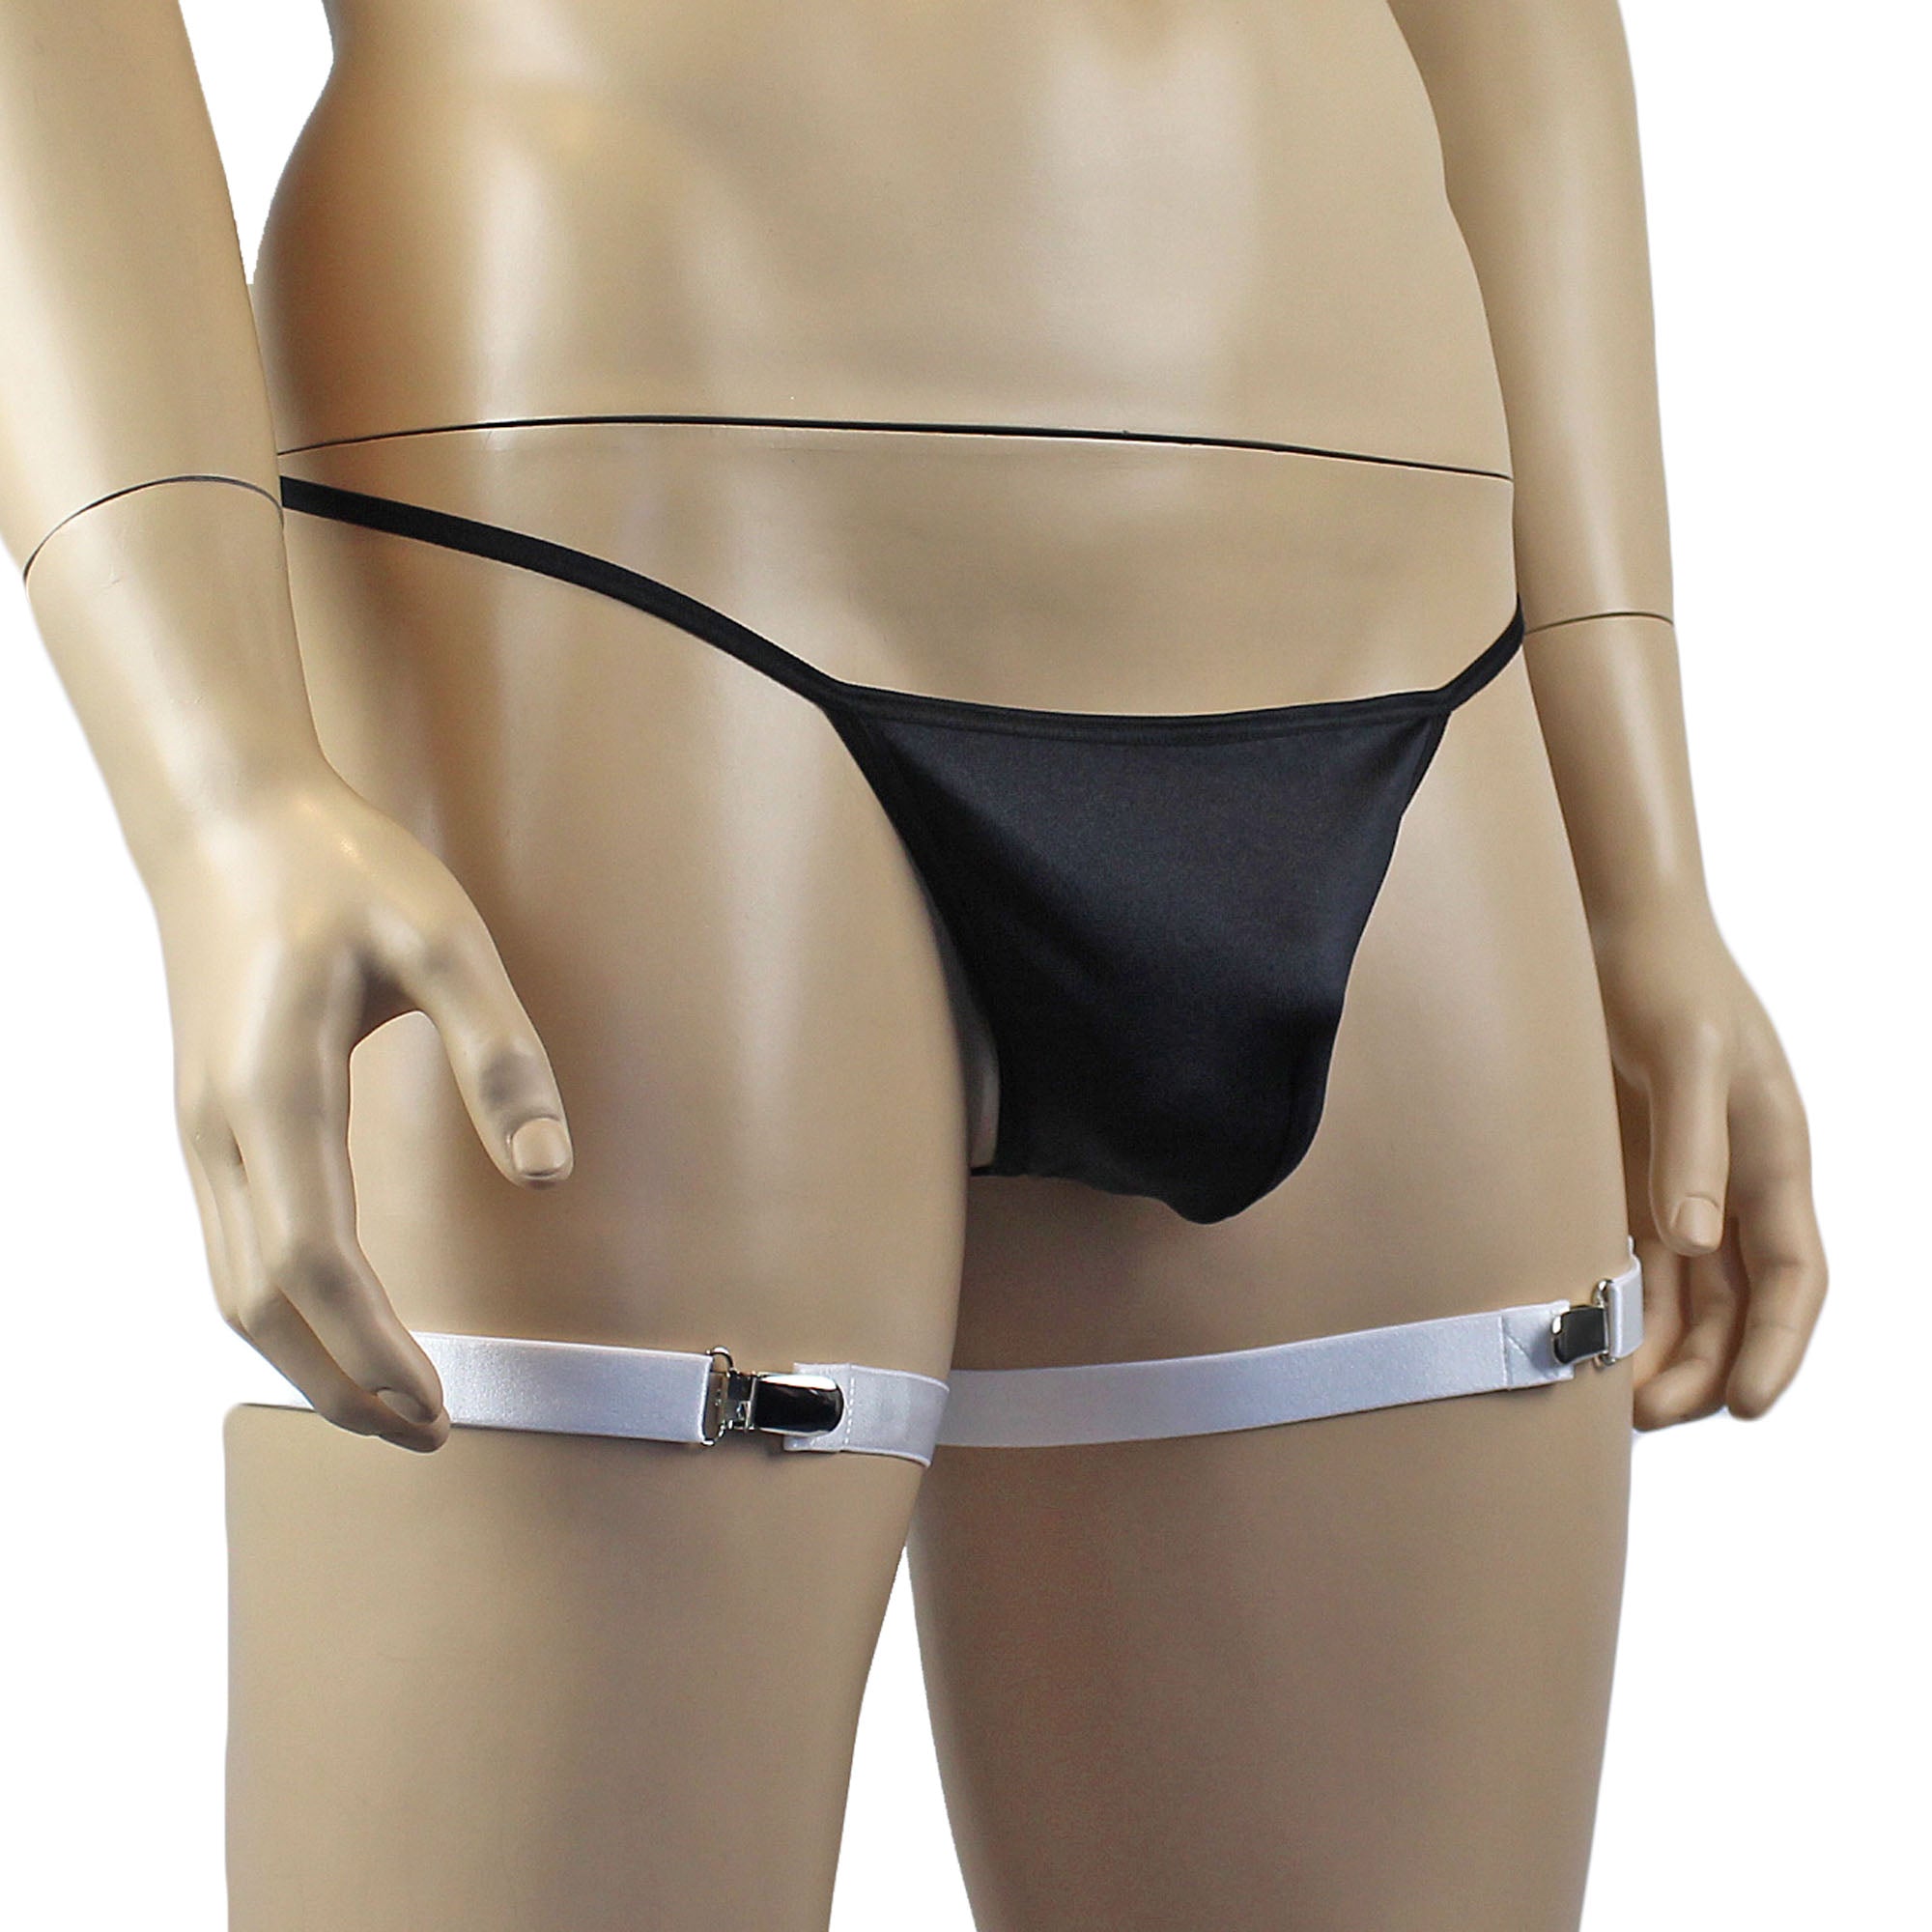 Unisex Zoe Underwear Adjustable Garters with Suspender Clips White